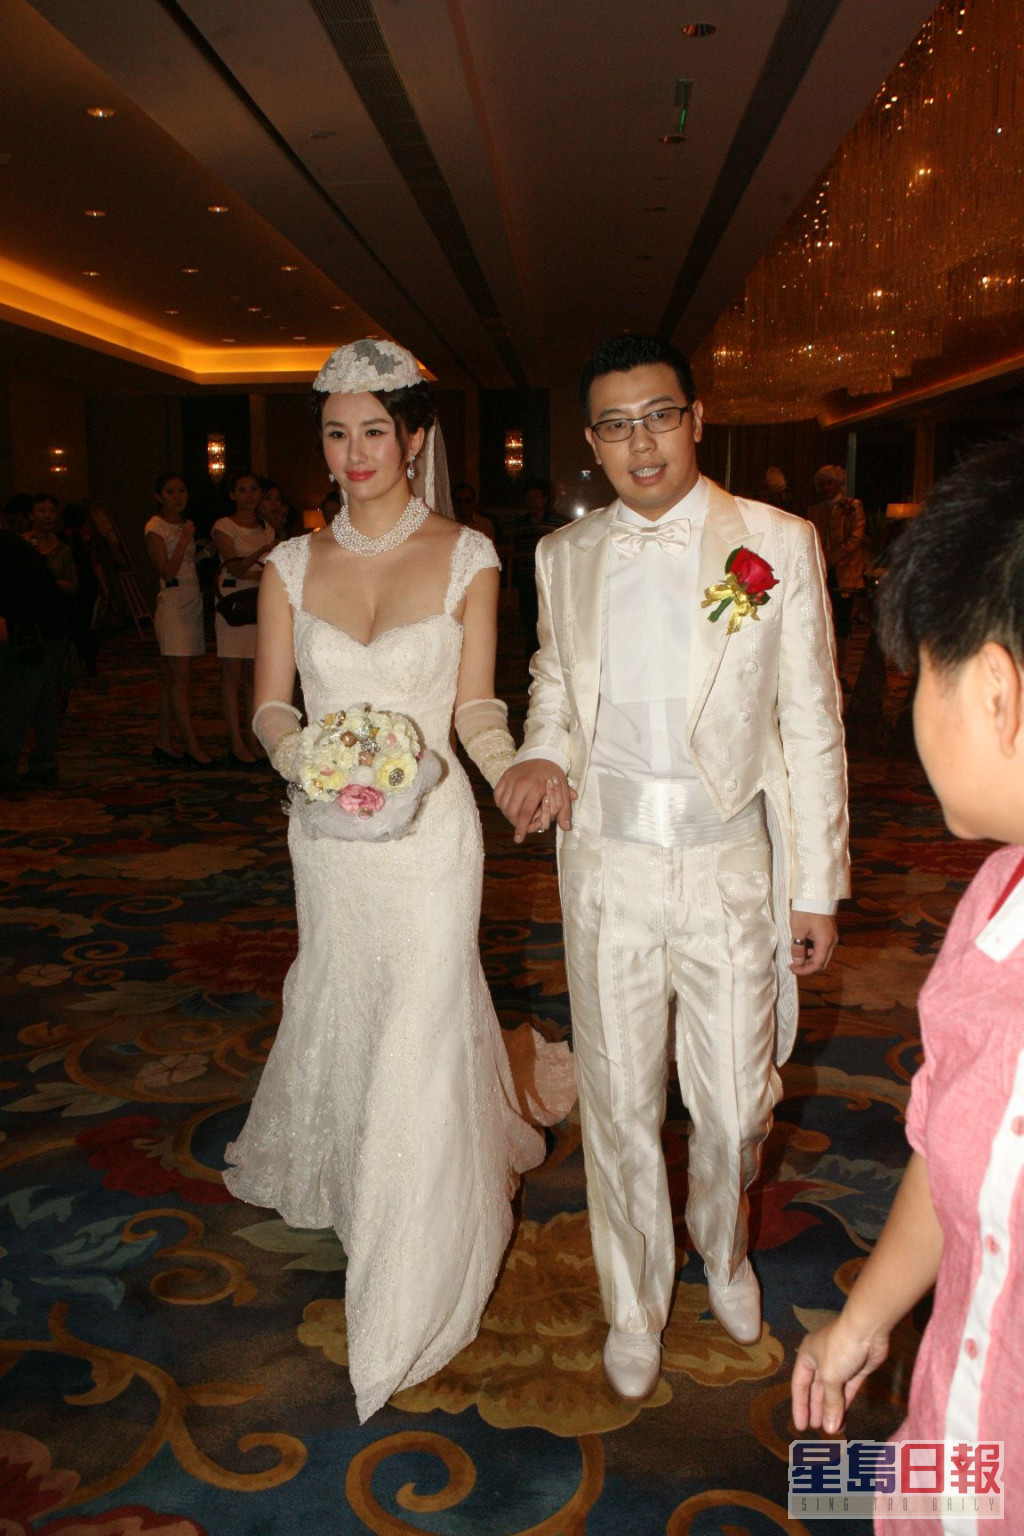 孟瑶于2011年在北京与内地富二代周磊举行欧洲式豪华婚礼。